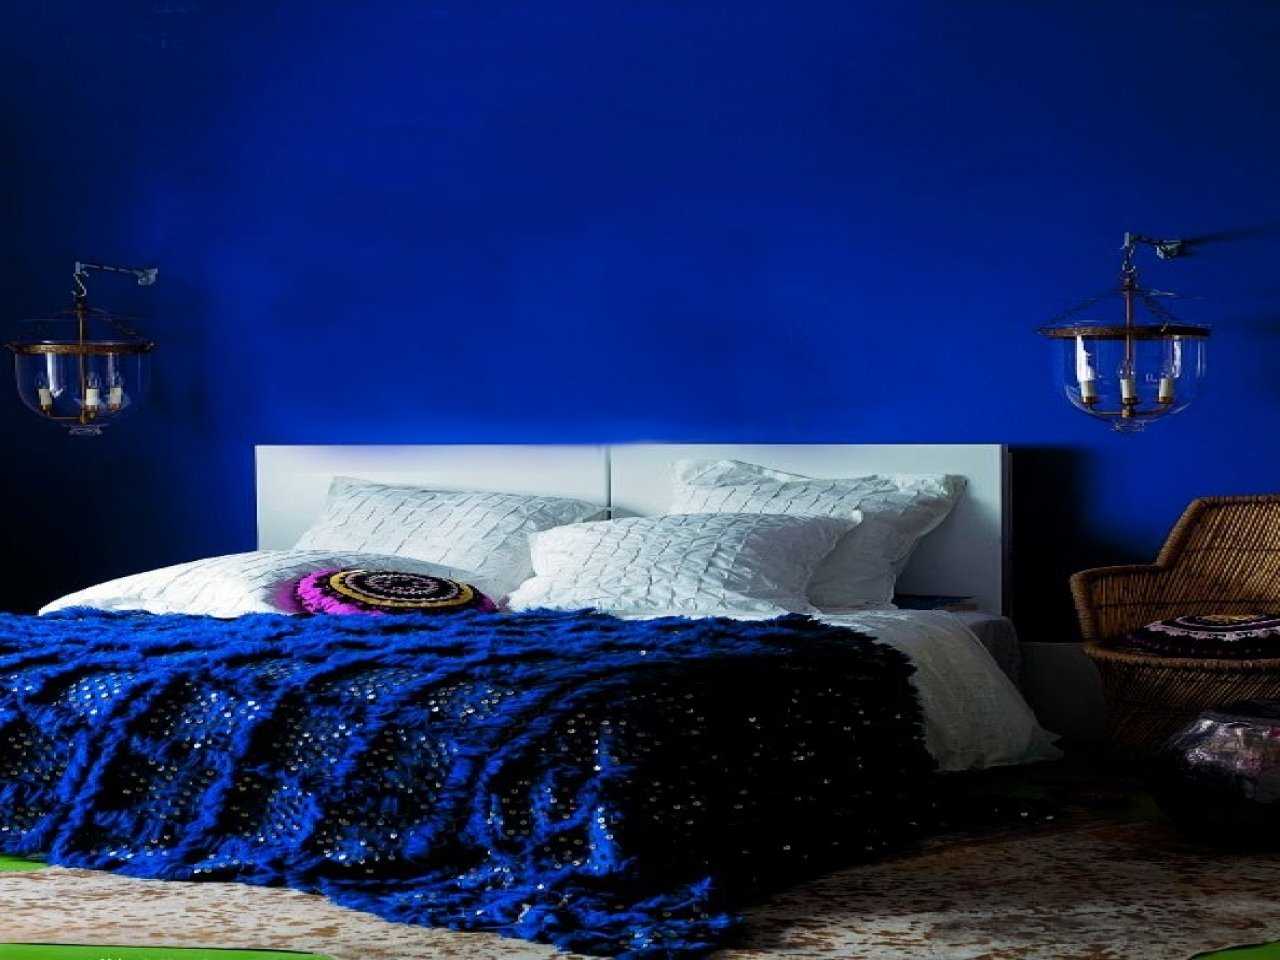 Цветовые сочетания в интерьере - блог о дизайне интерьера: спальня, гостиная, кухня